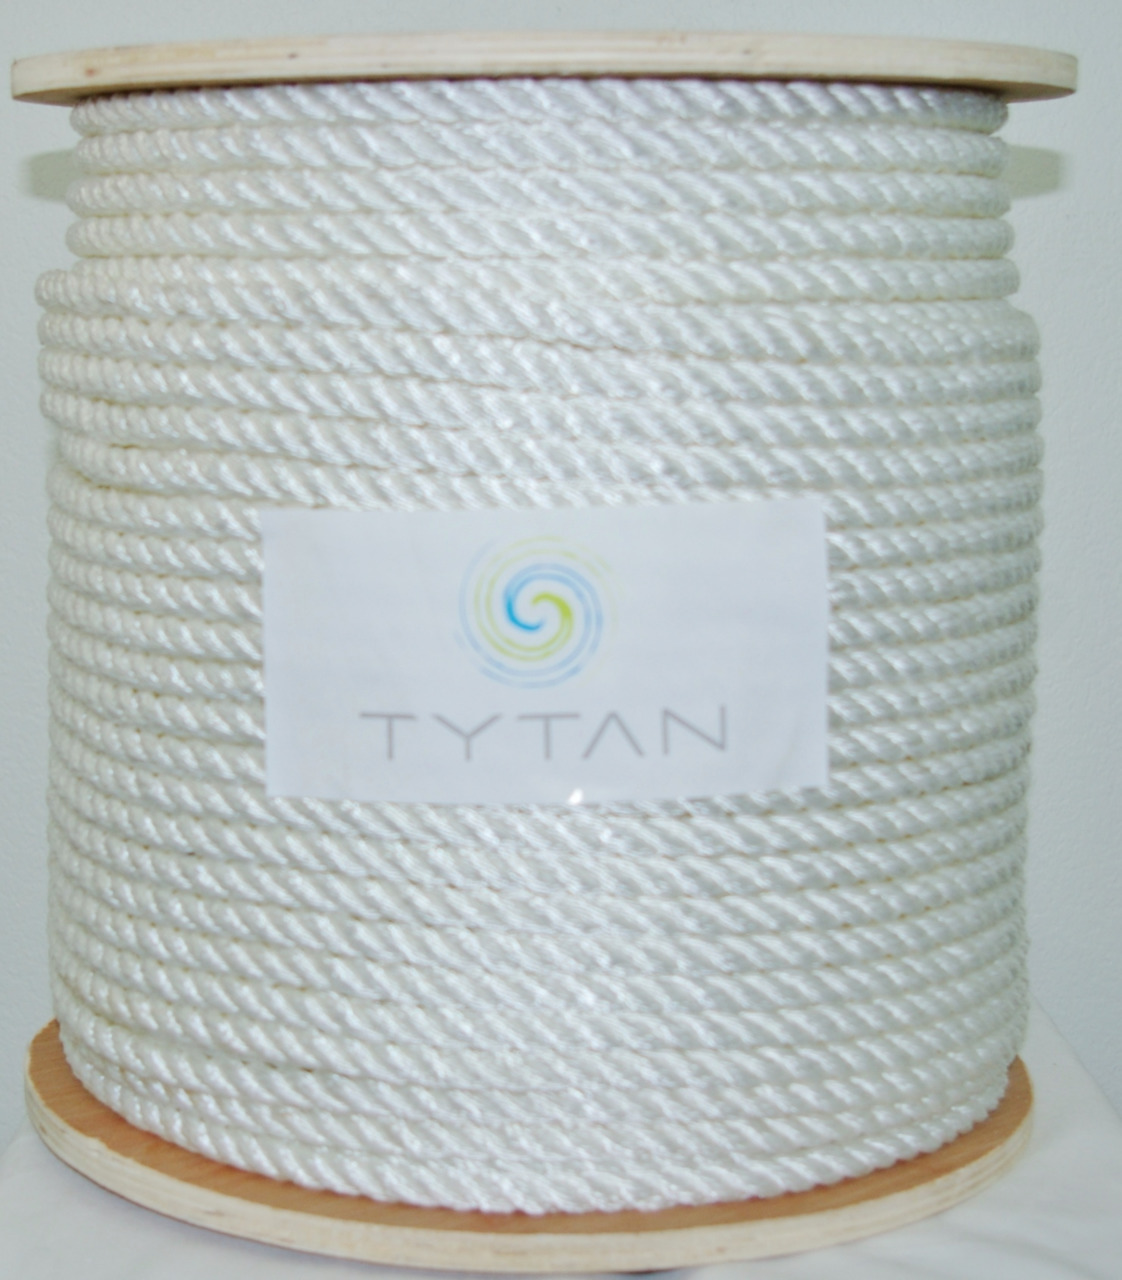 5/8 x 600 ft 3 Strand Twisted Nylon Rope - No. Ny58600